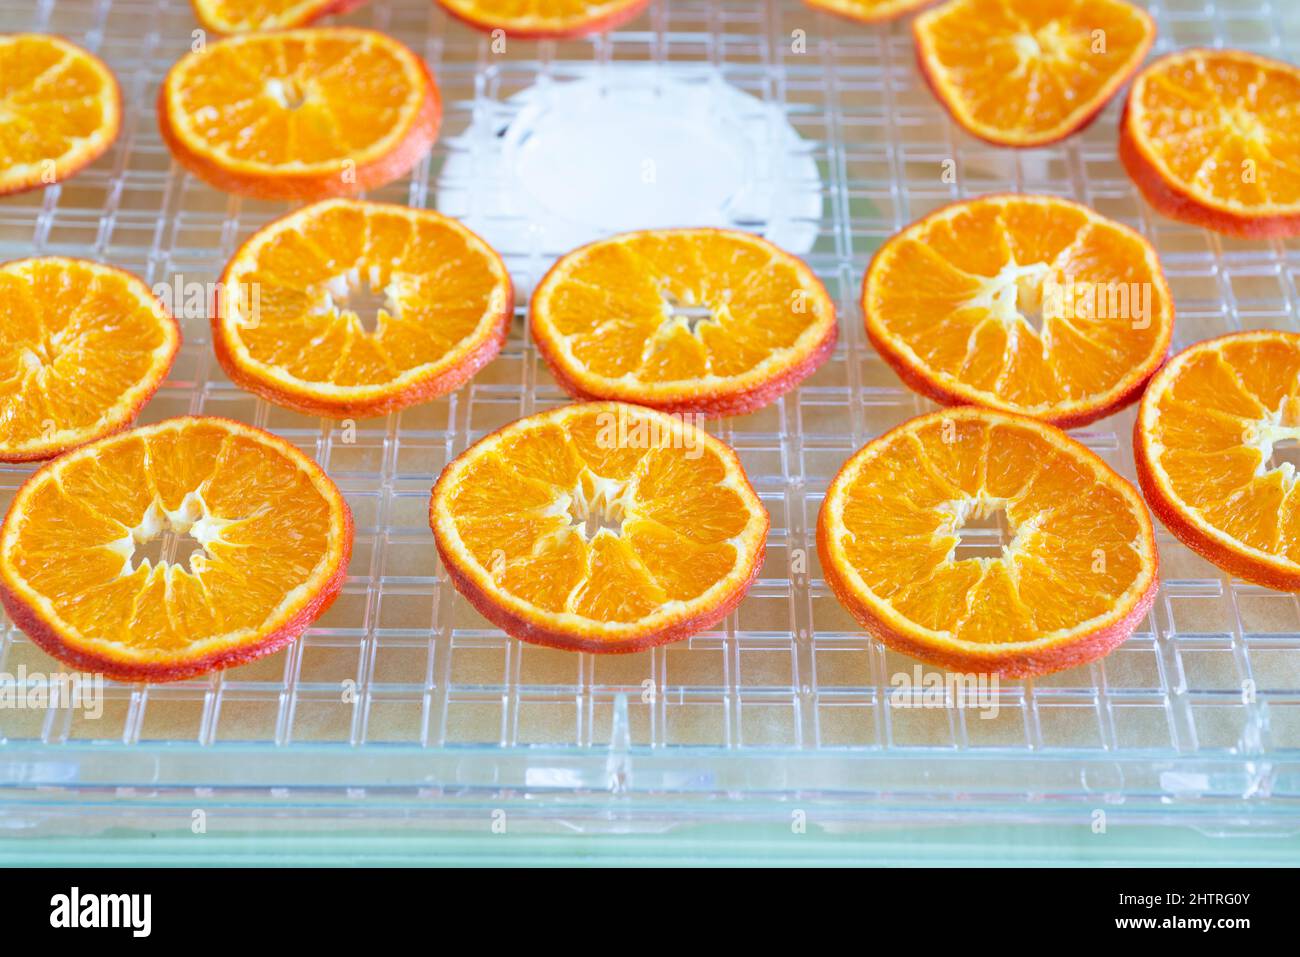 Rodajas de naranja confitada secas en un deshidratador. Foto de stock